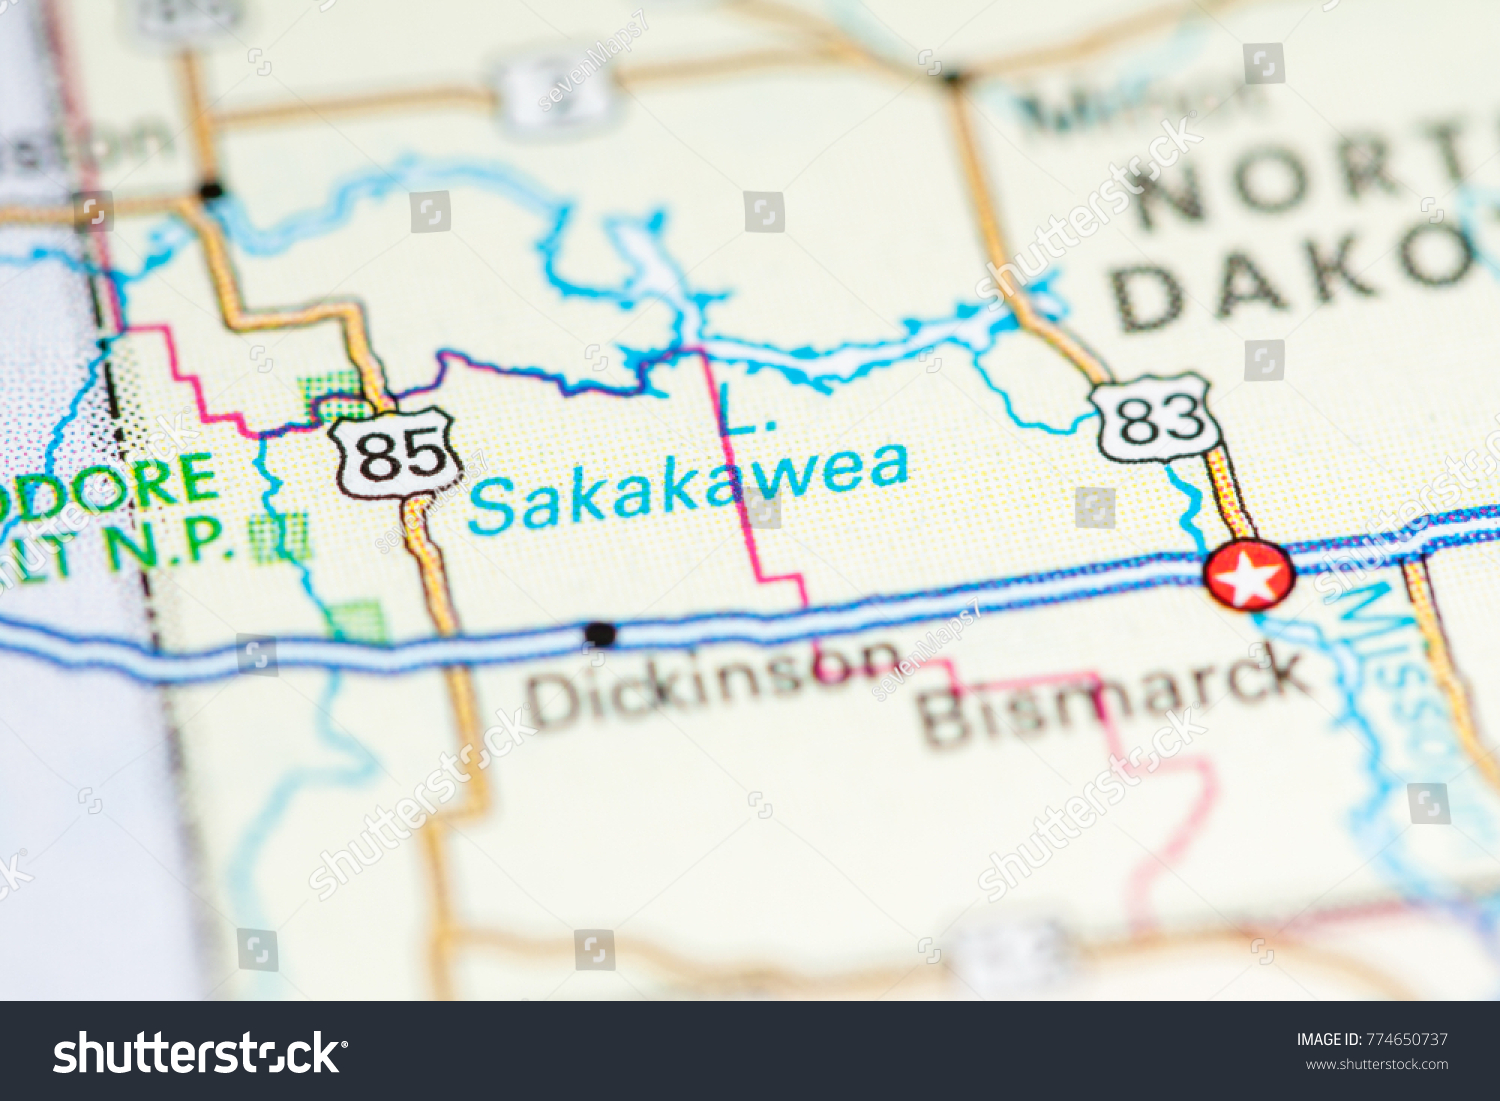 map of lake sakakawea Lake Sakakawea Usa On Map Stock Photo Edit Now 774650737 map of lake sakakawea